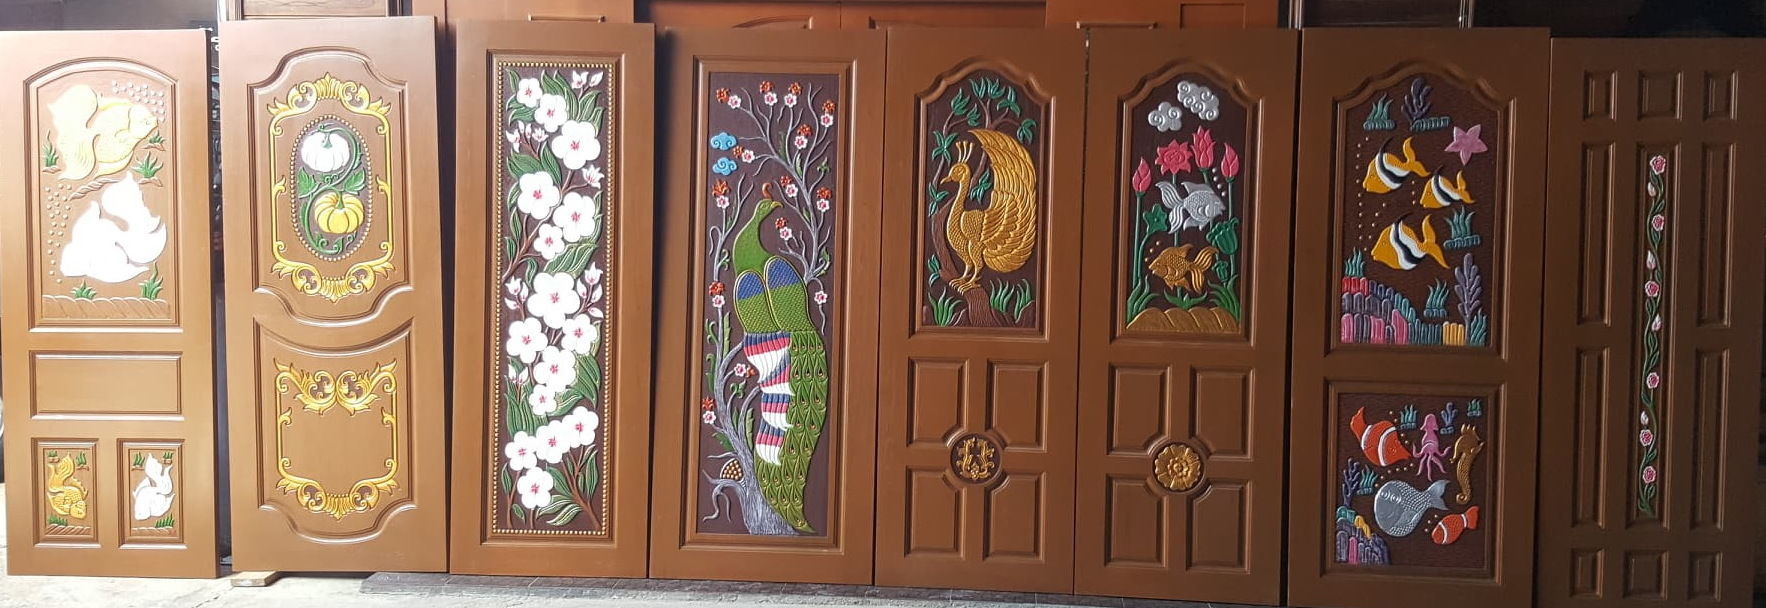 ประตู ประตูไม้ บานประตูไม้ ประตูไม้สัก